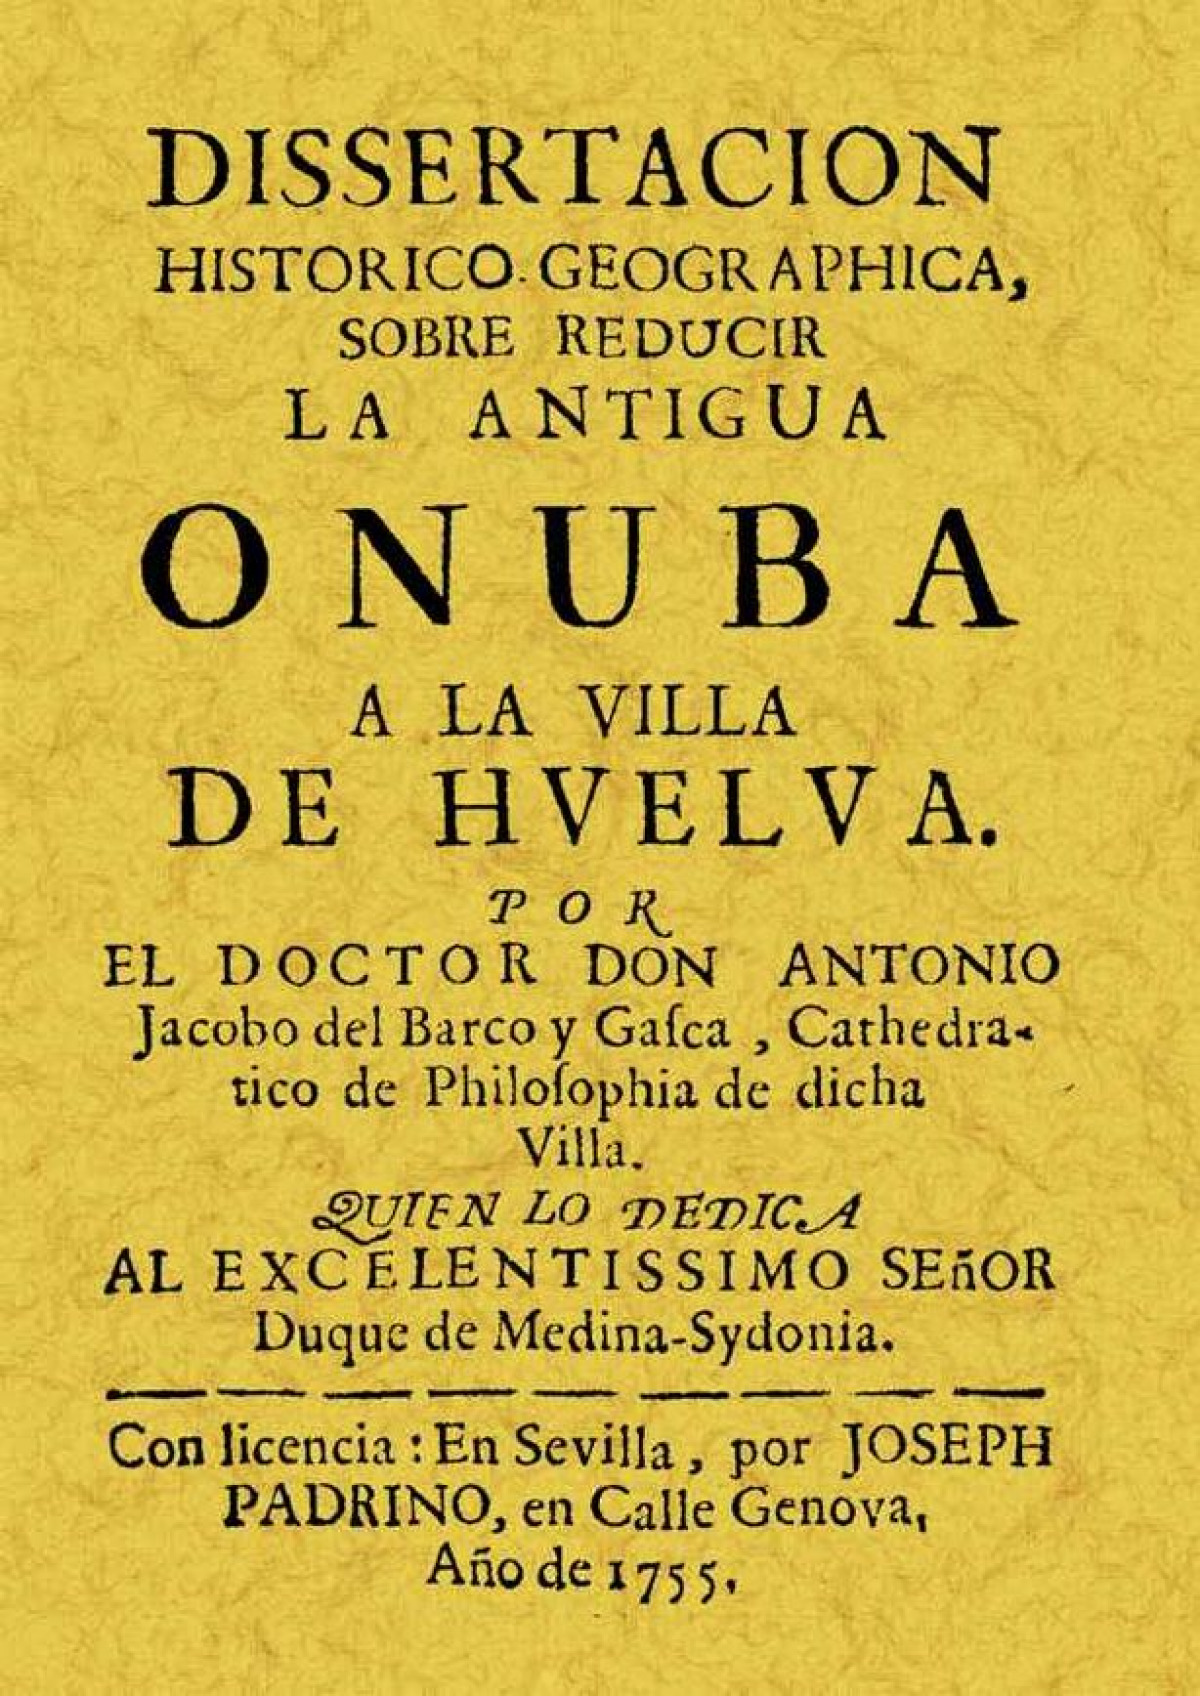 Disertación histórica Onuba - Barco y Gasca, Antonio Jacobo del